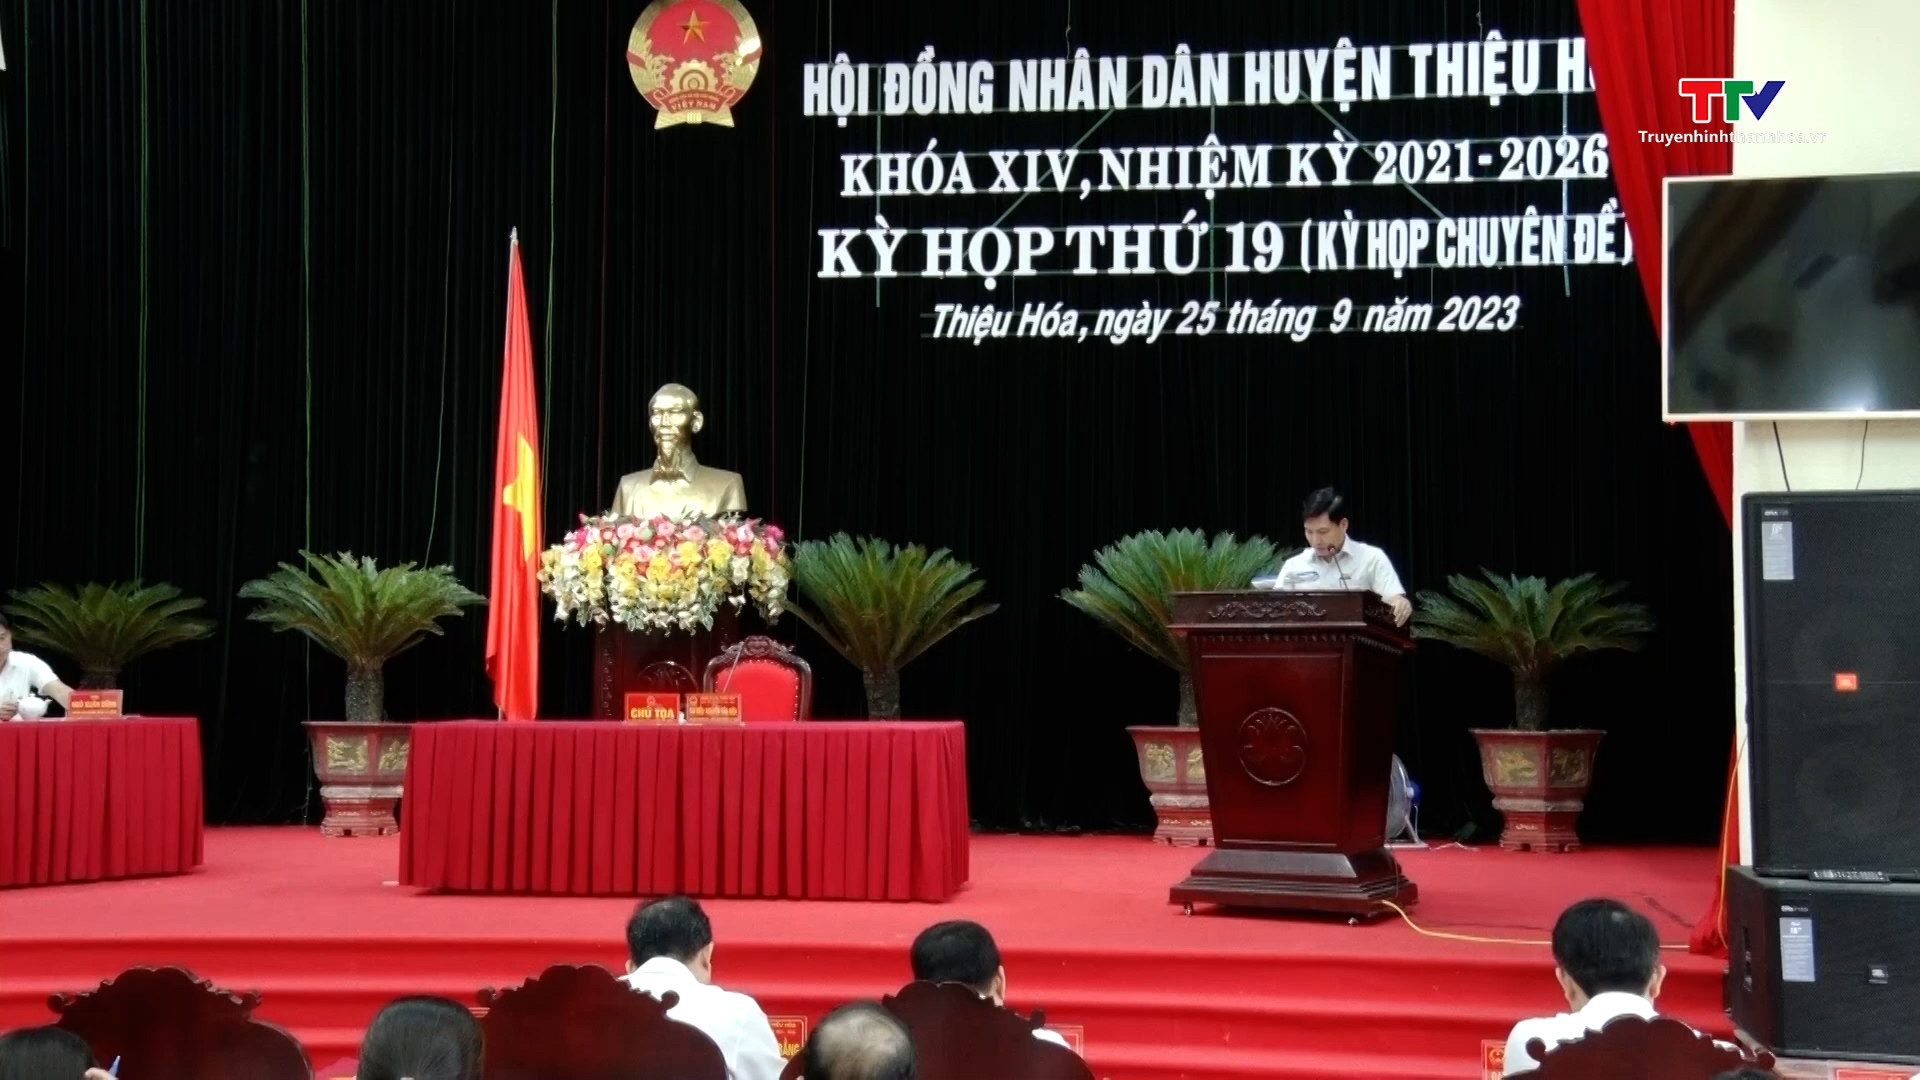 Kỳ họp thứ 19, Hội đồng nhân dân huyện Thiệu Hoá khoá XIV nhiệm kỳ 2021-2026 - Ảnh 2.